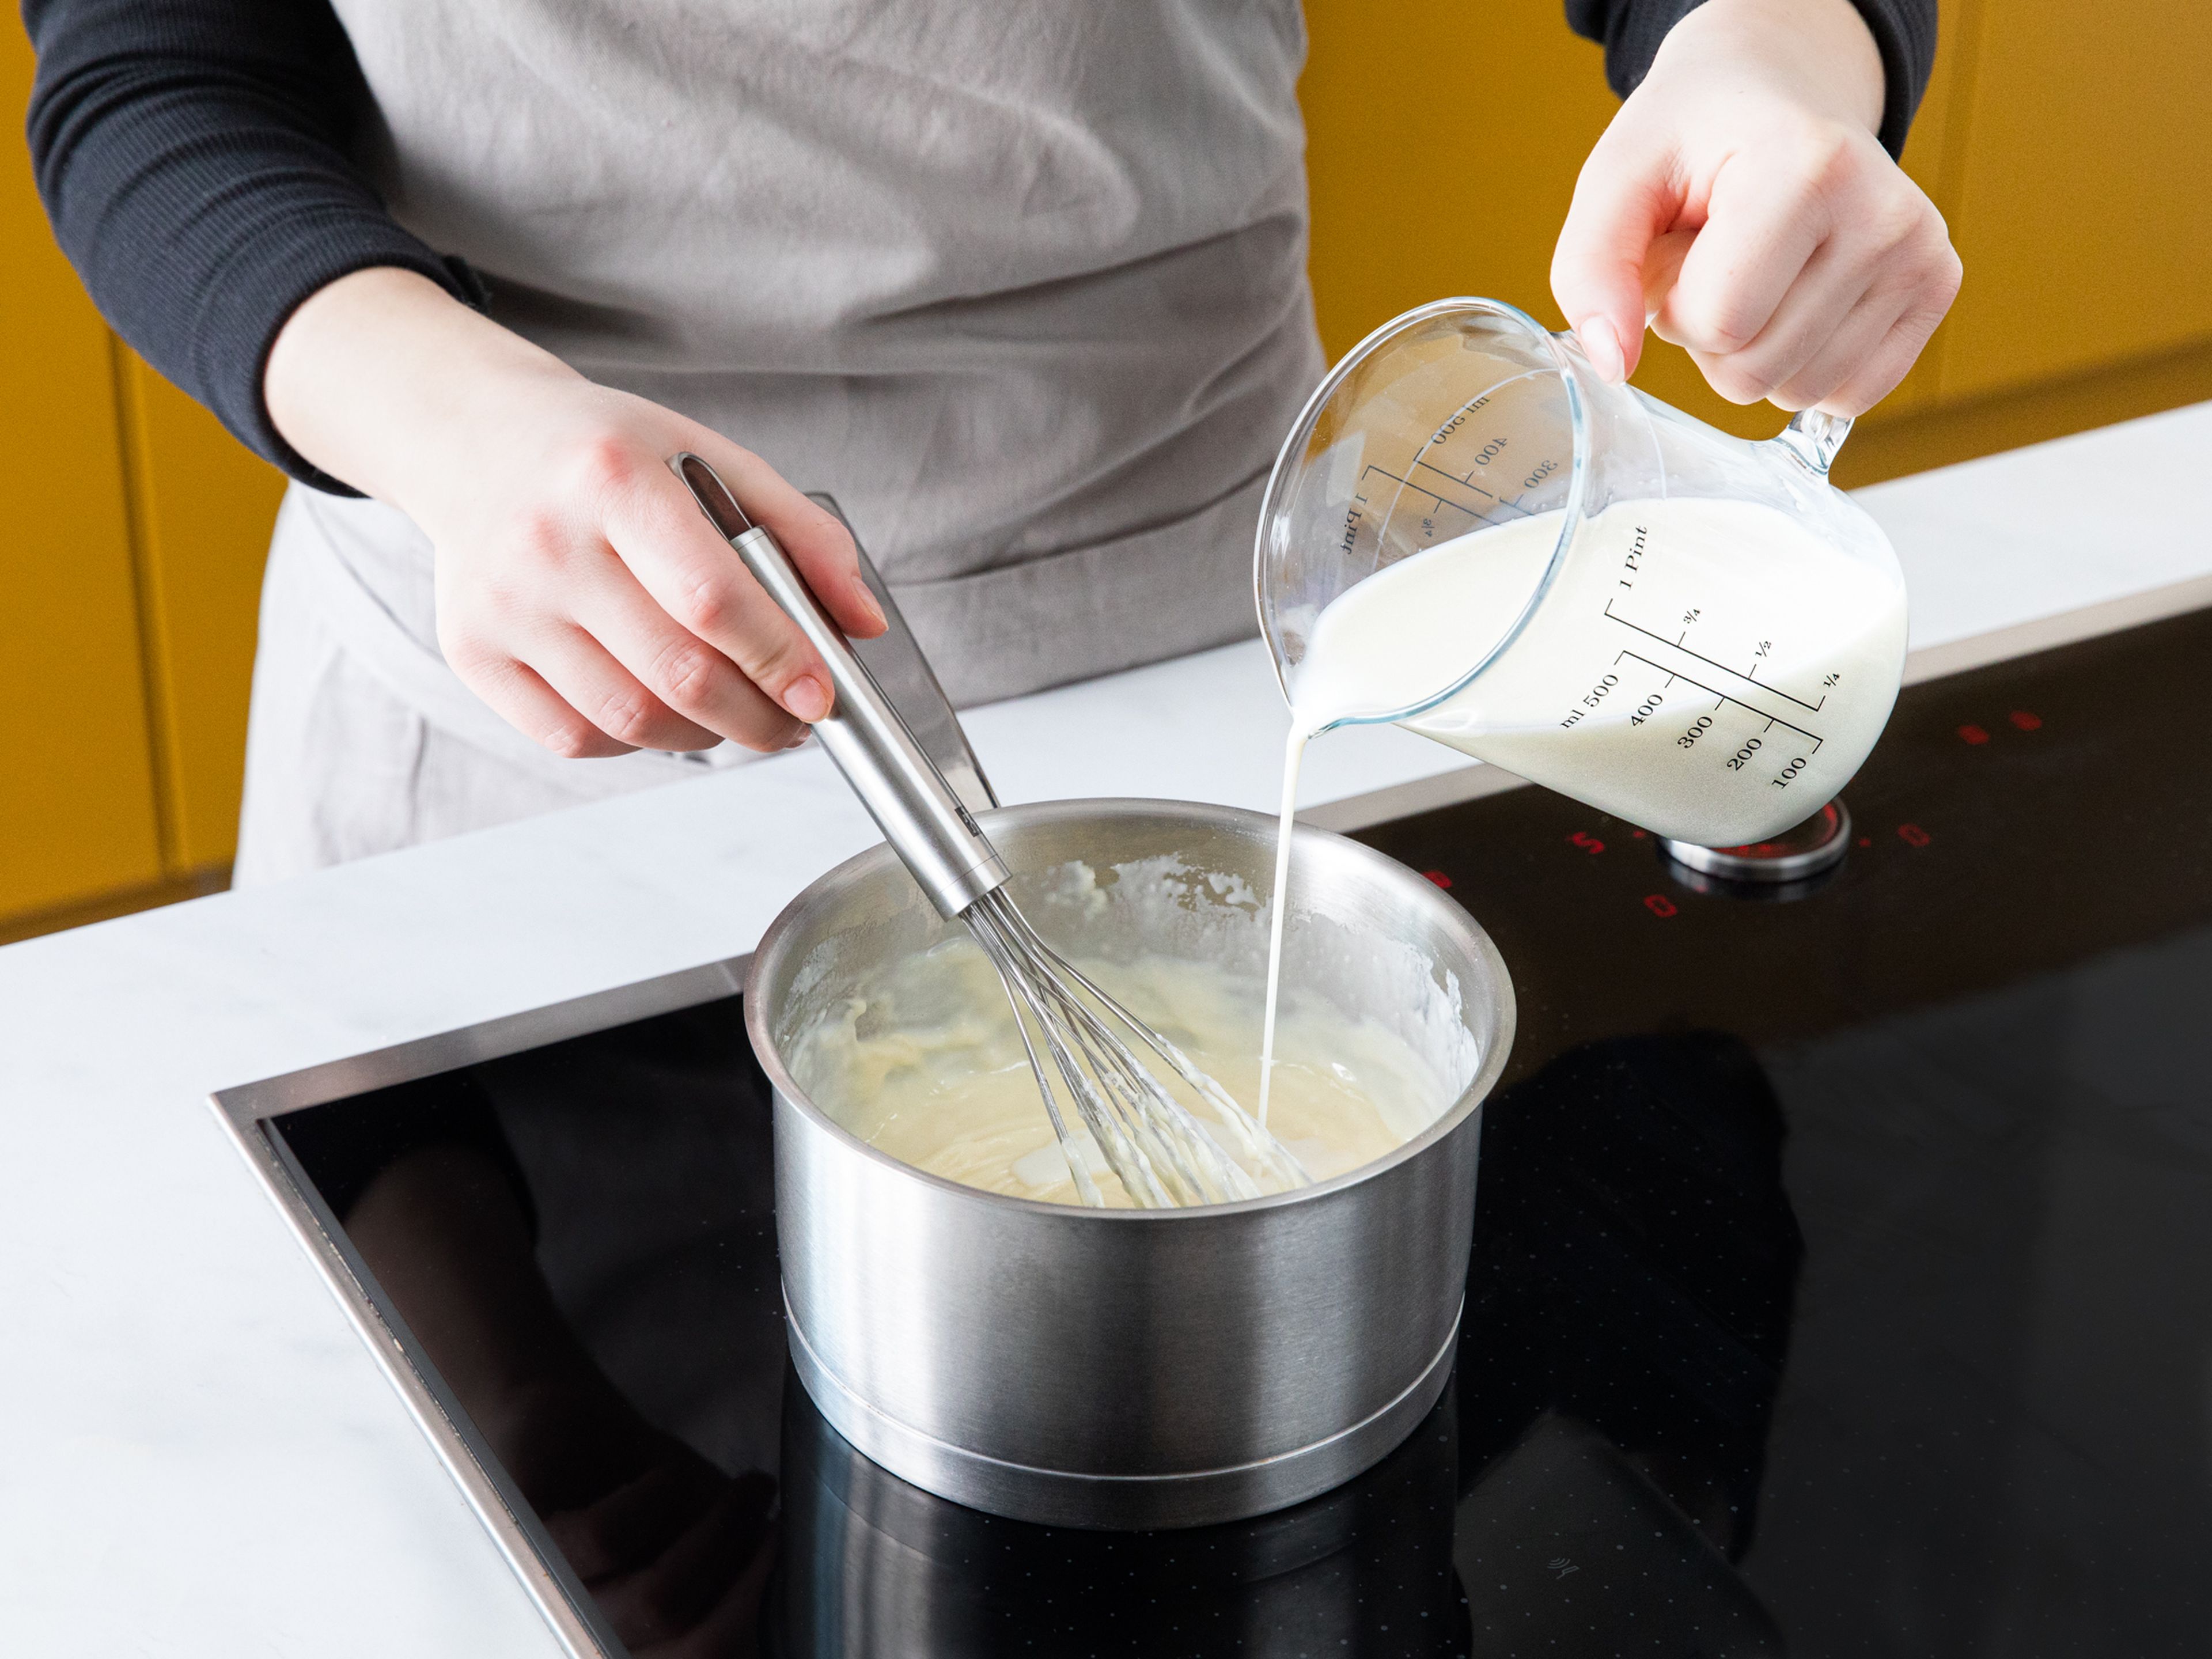 Den Ofen auf 200°C vorheizen. Für die Béchamelsauce, die Butter in einem kleinen Topf schmelzen. Mehl dazugeben und unter Rühren anrösten. Nach und nach und unter ständigem Rühren Milch hinzugeben und die Hitze reduzieren, für ca. 5 Min. Mit Muskat, Salz und Pfeffer abschmecken.